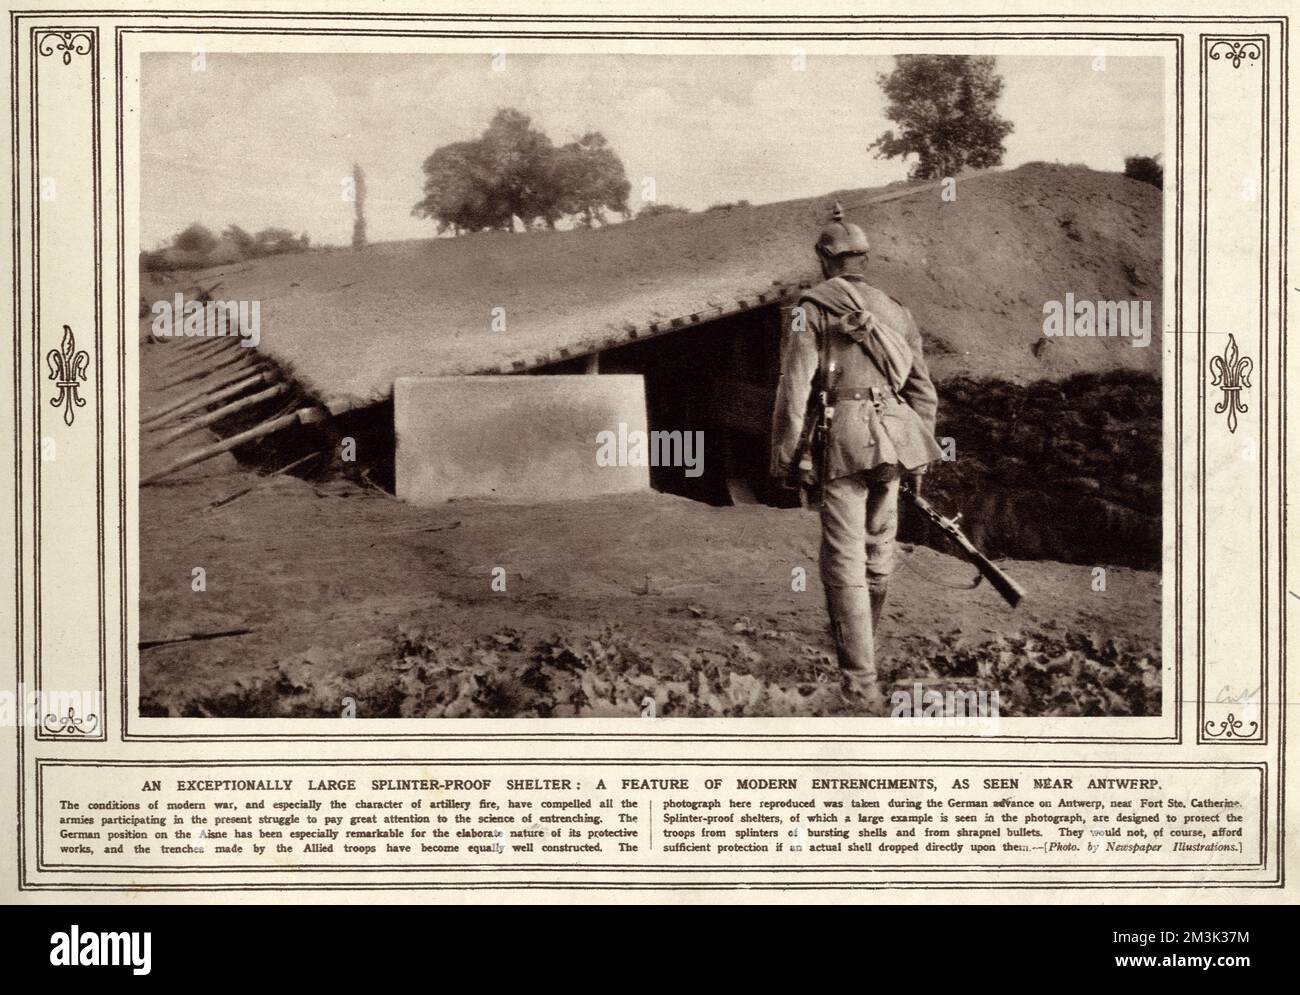 Un rifugio a prova di schegge eccezionalmente grande: Una caratteristica di entrenchments modren, come visto vicino Anversa. 1914 Foto Stock